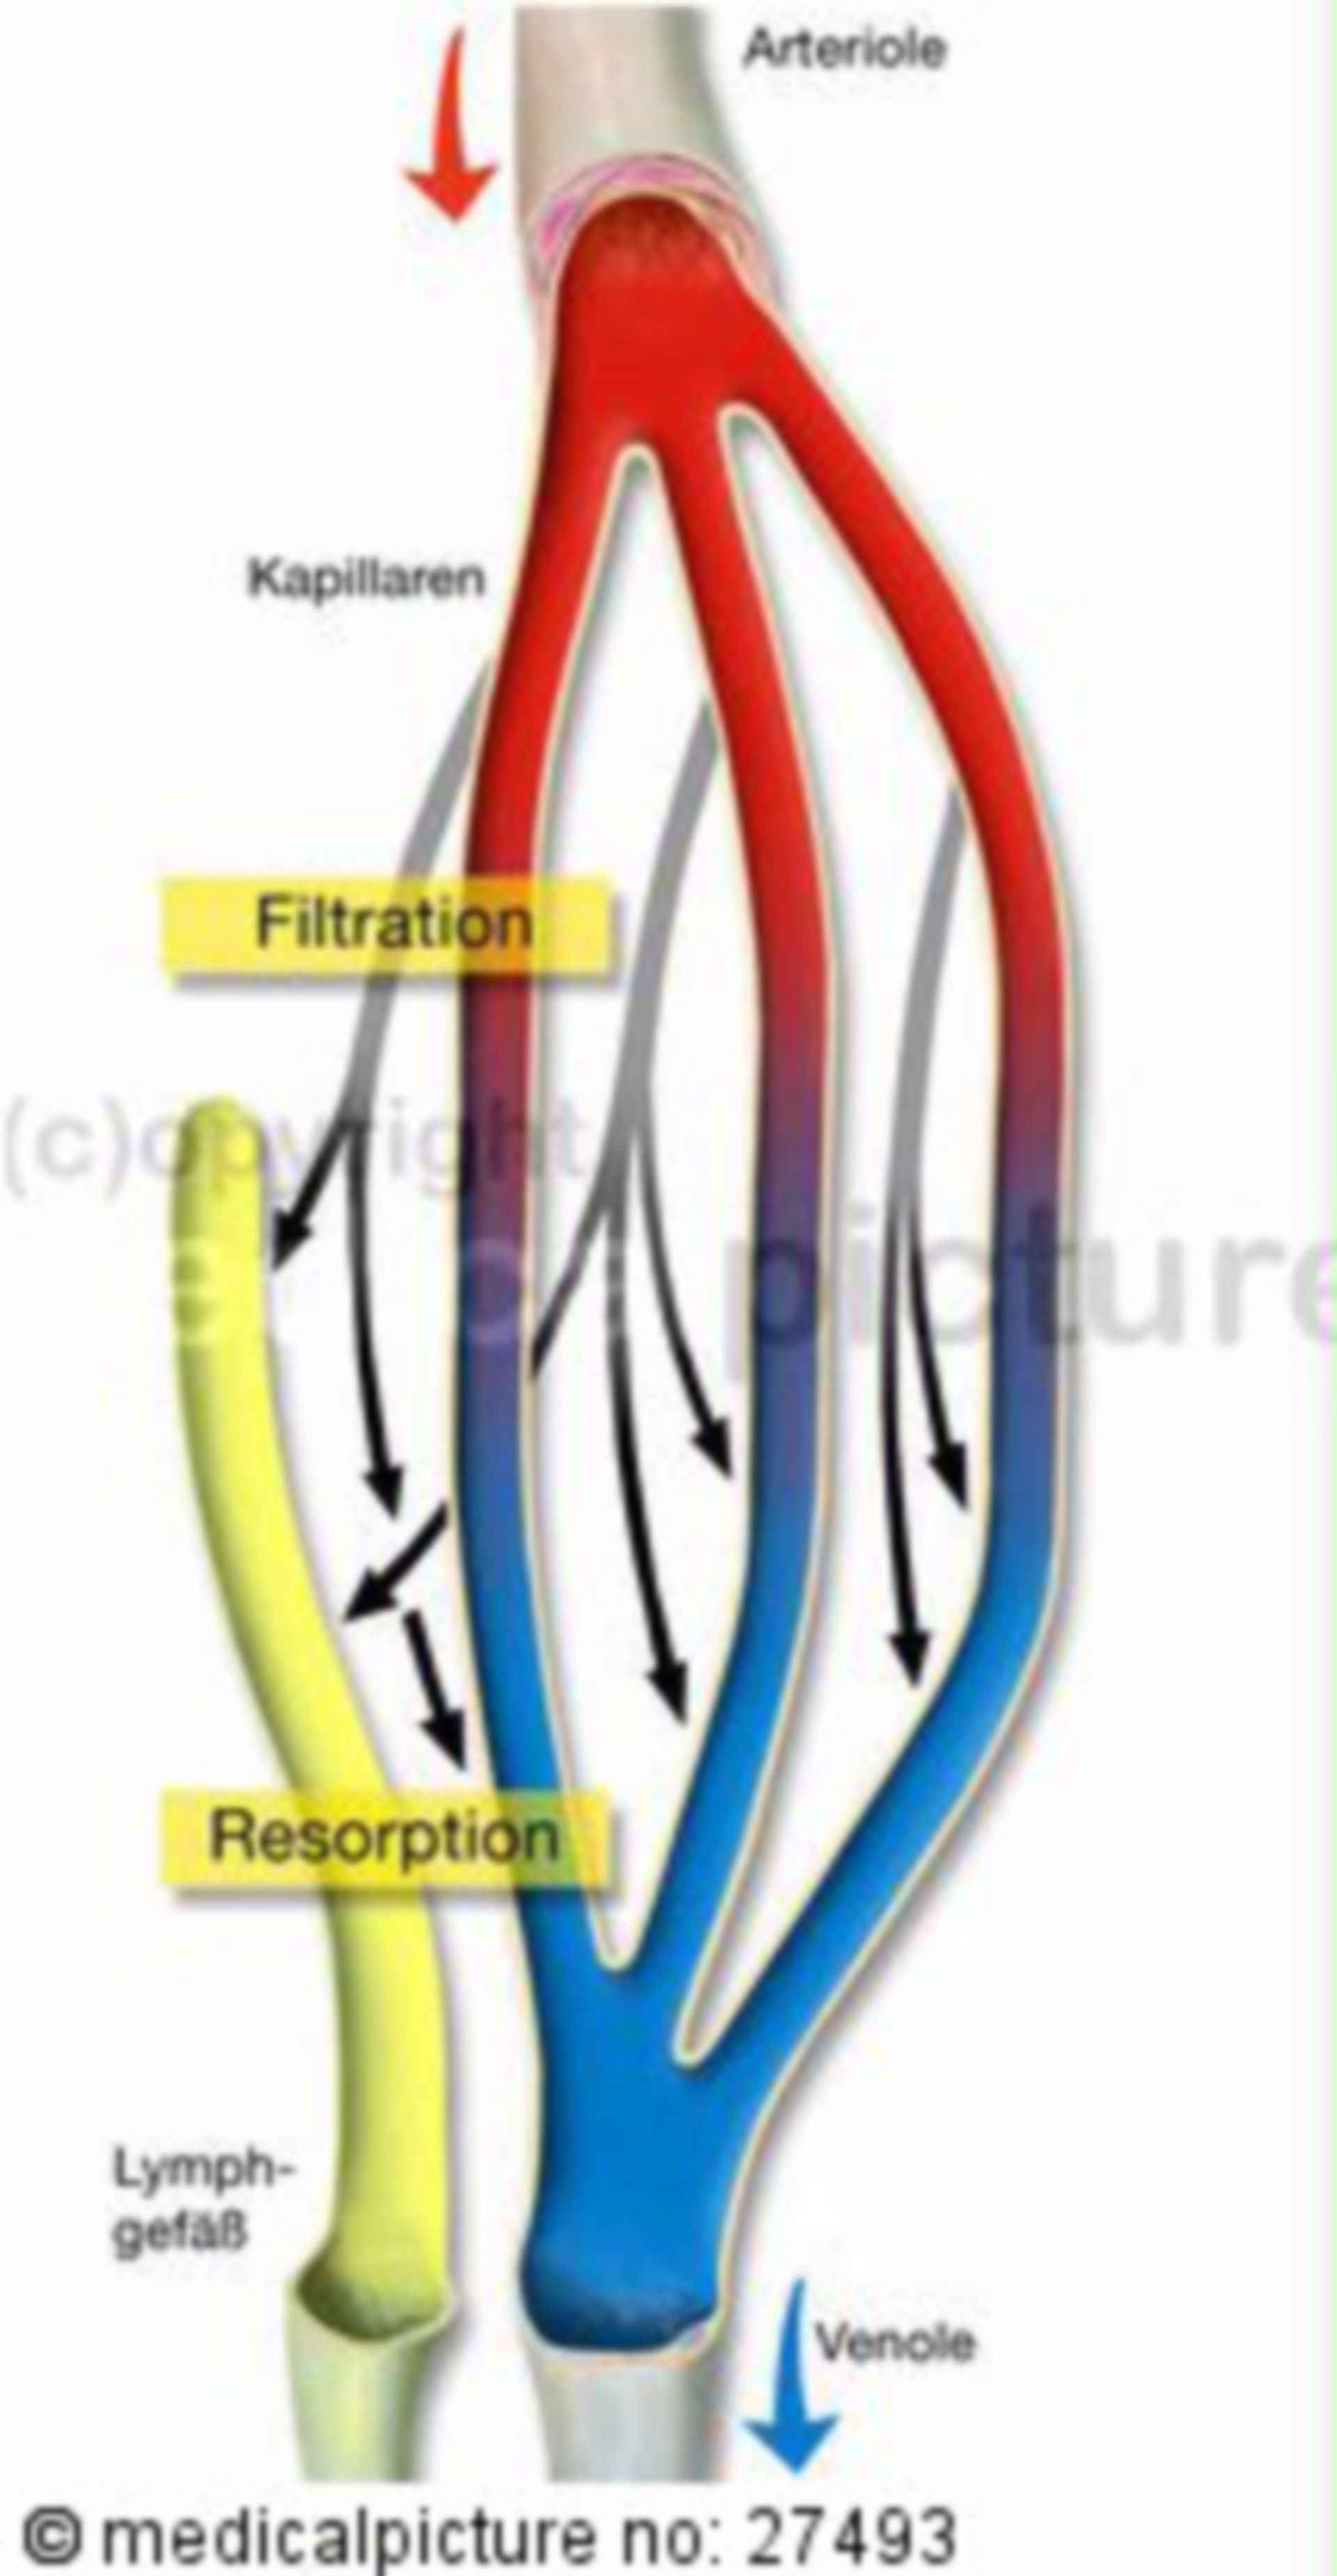  Kreislauf, Filtration und Resorption 
